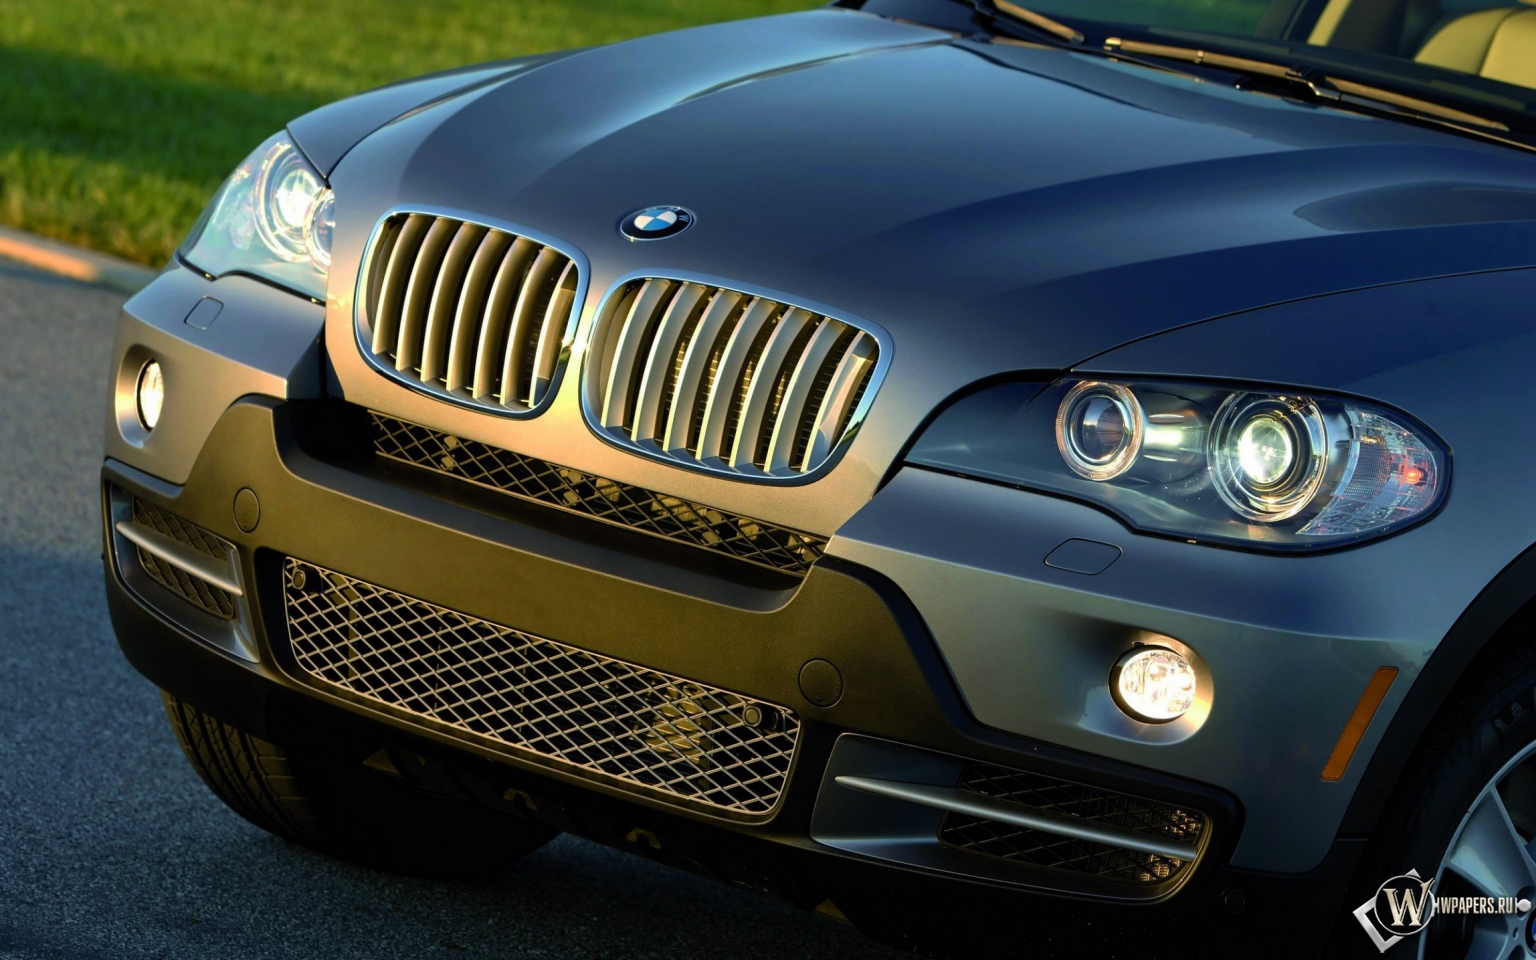 BMW X5 (2007) 1536x960